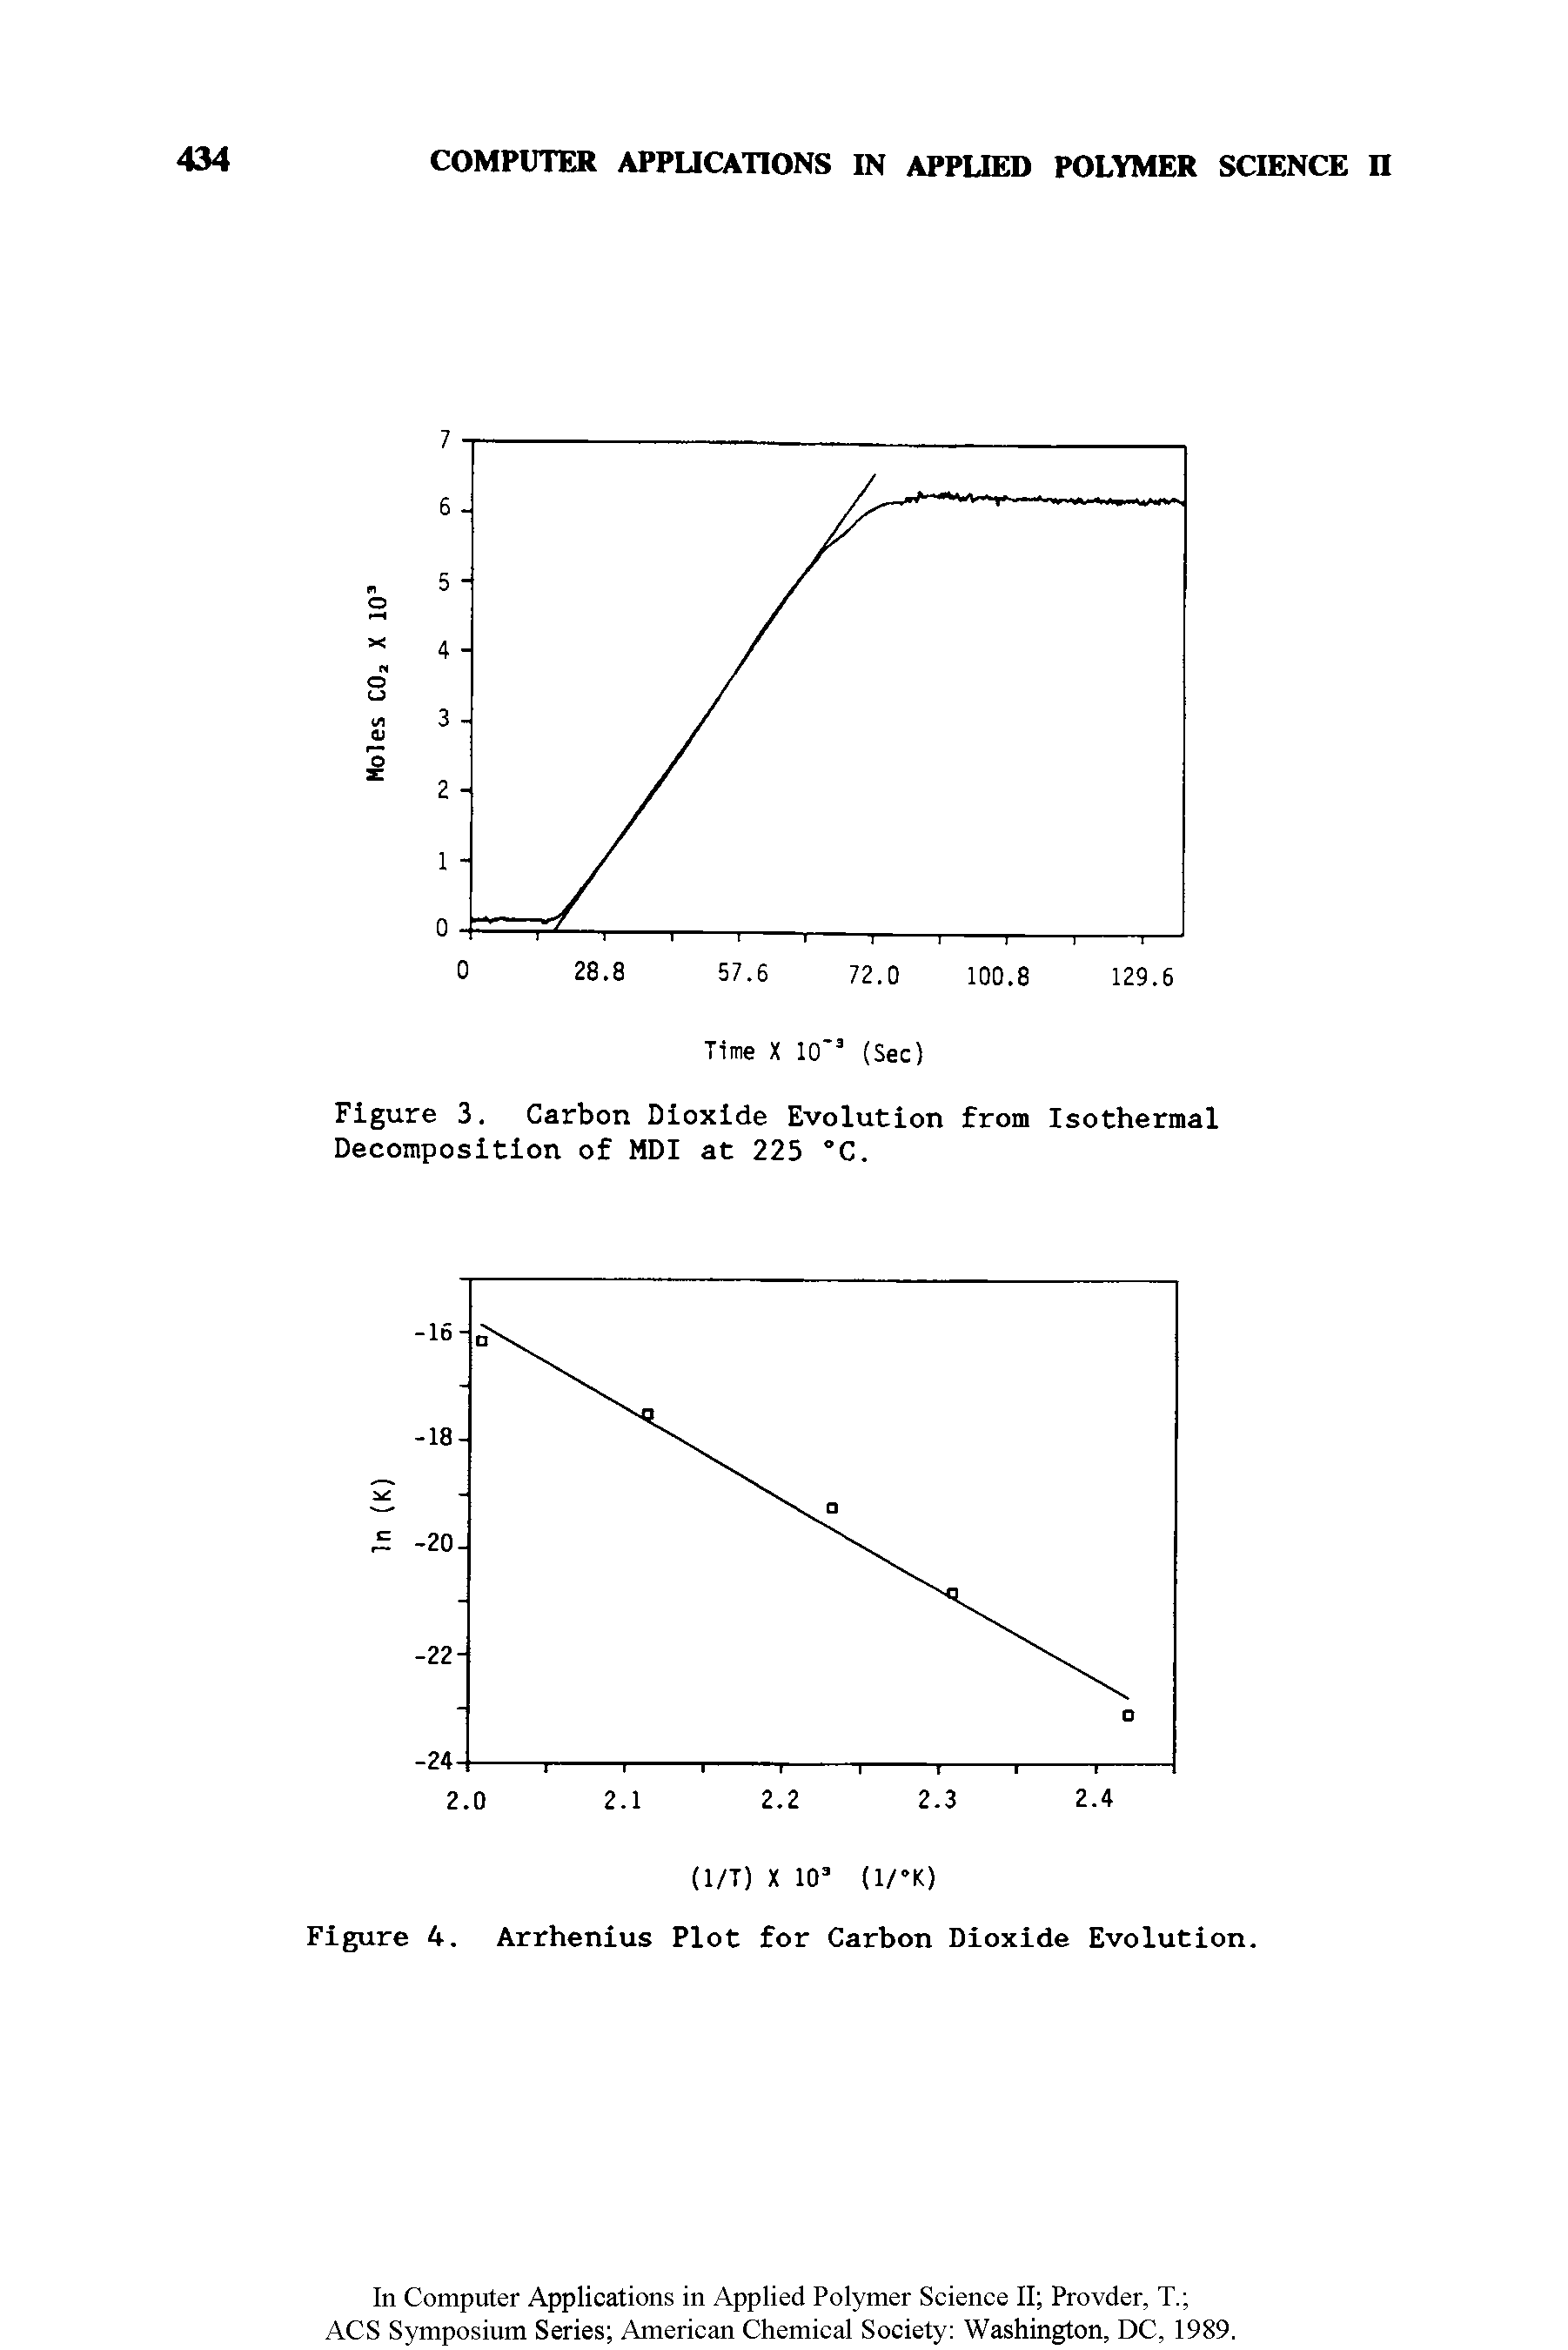 Figure 4. Arrhenius Plot for Carbon Dioxide Evolution.